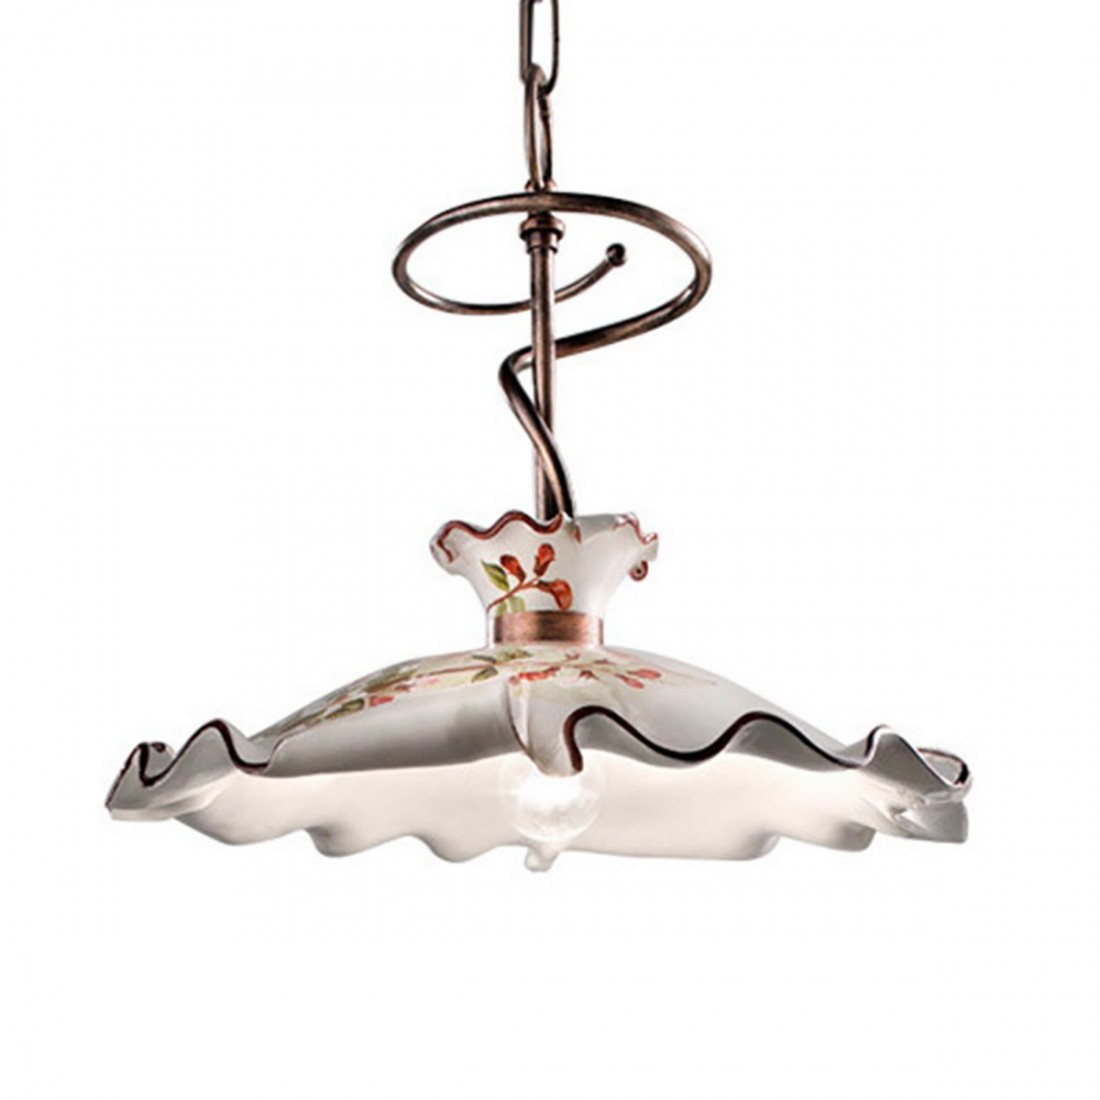 Sospensione FE-MILANO C1127 E27 LED ceramica decorata artigianale rustica classico lampadario interno